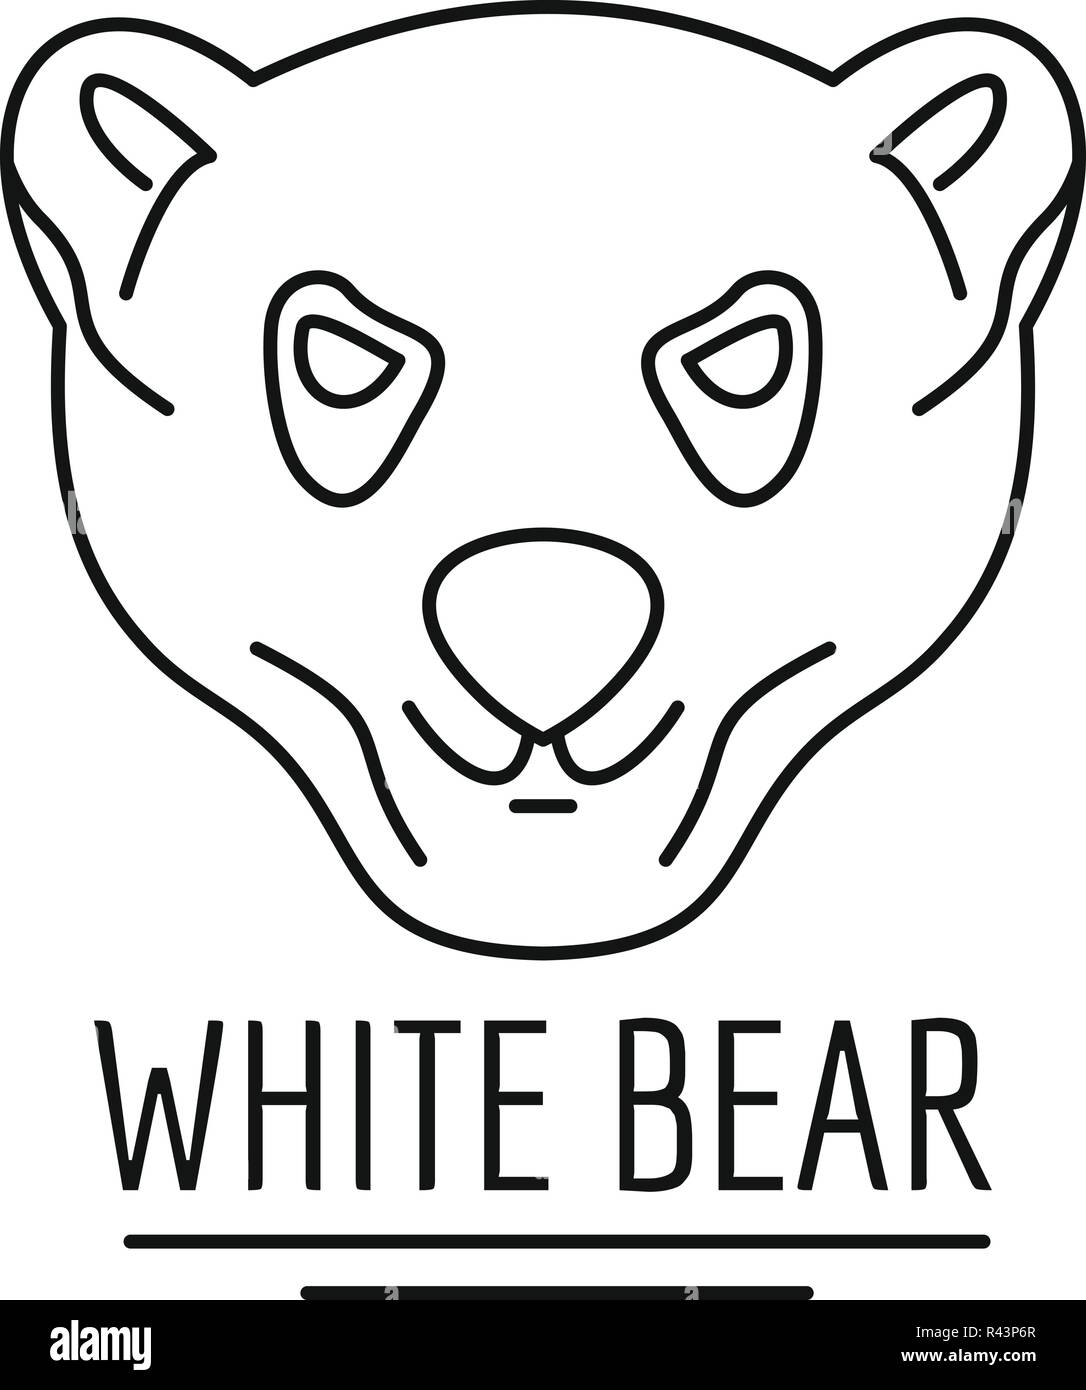 White bears logo. Outline illustration of white bears vector logo for web design isolated on white background Stock Vector